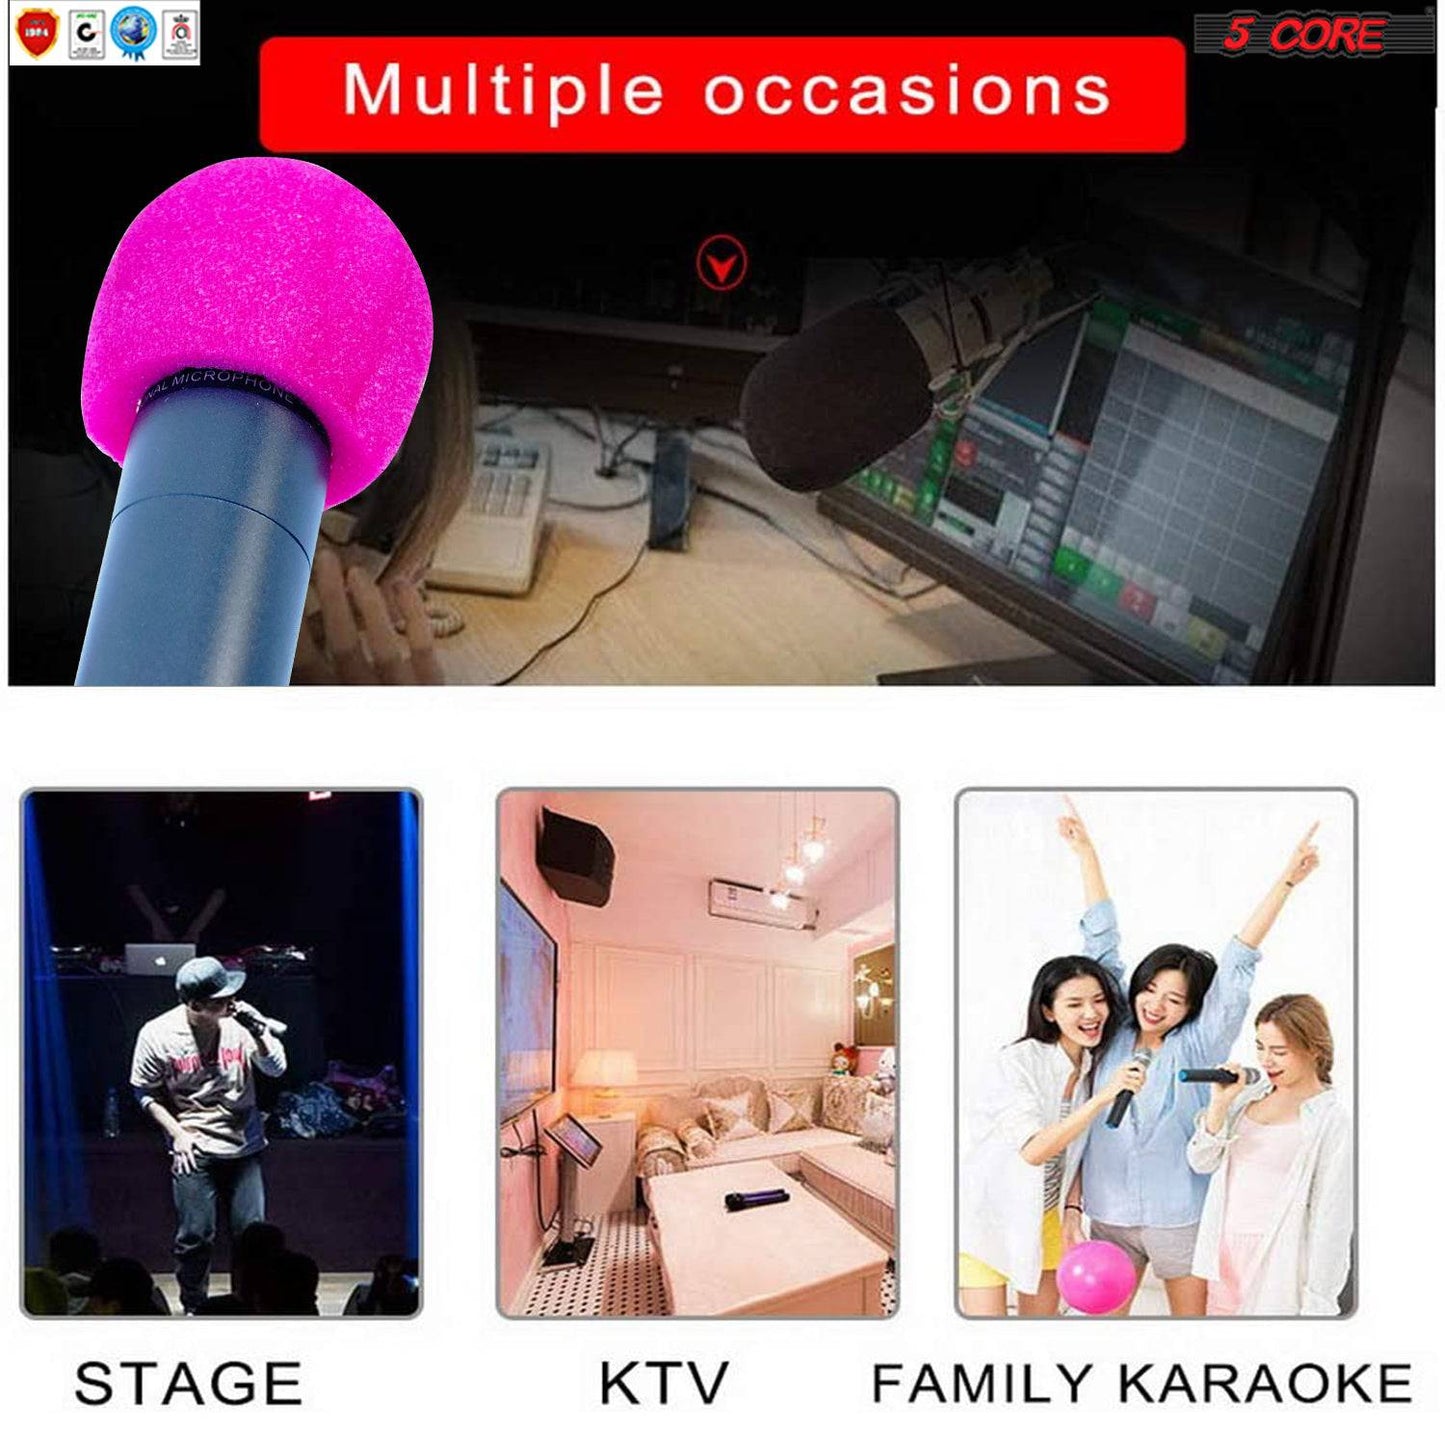 5Core Microphone Pop Filter Windscreen Mic Sponge Cover Foam For Karaoke Black & PINK SPONGE